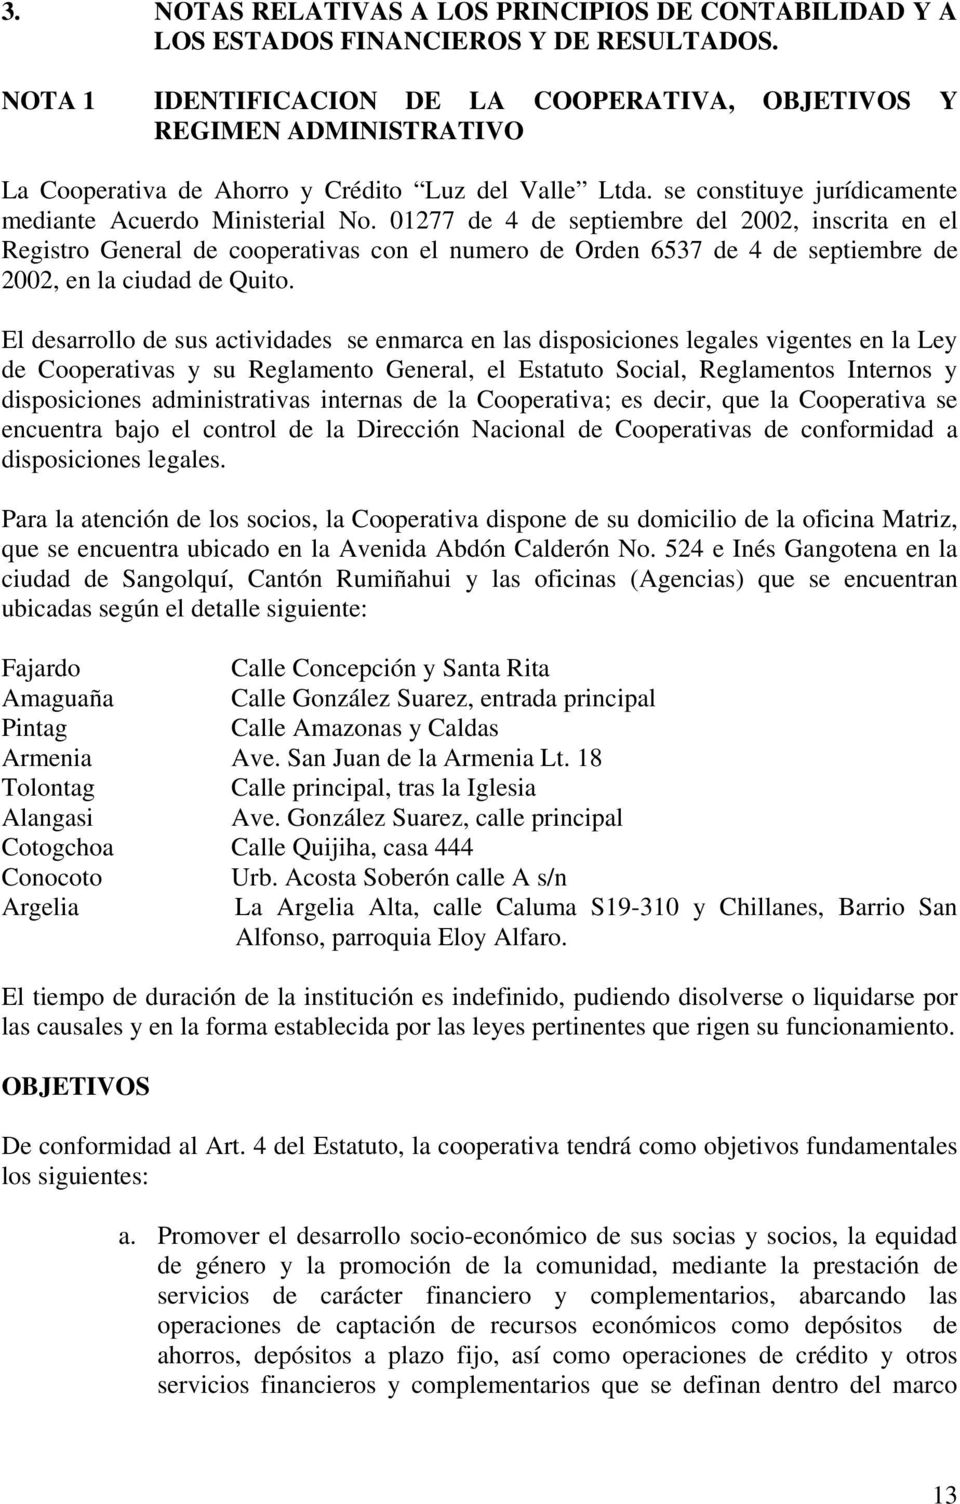 01277 de 4 de septiembre del 2002, inscrita en el Registro General de cooperativas con el numero de Orden 6537 de 4 de septiembre de 2002, en la ciudad de Quito.